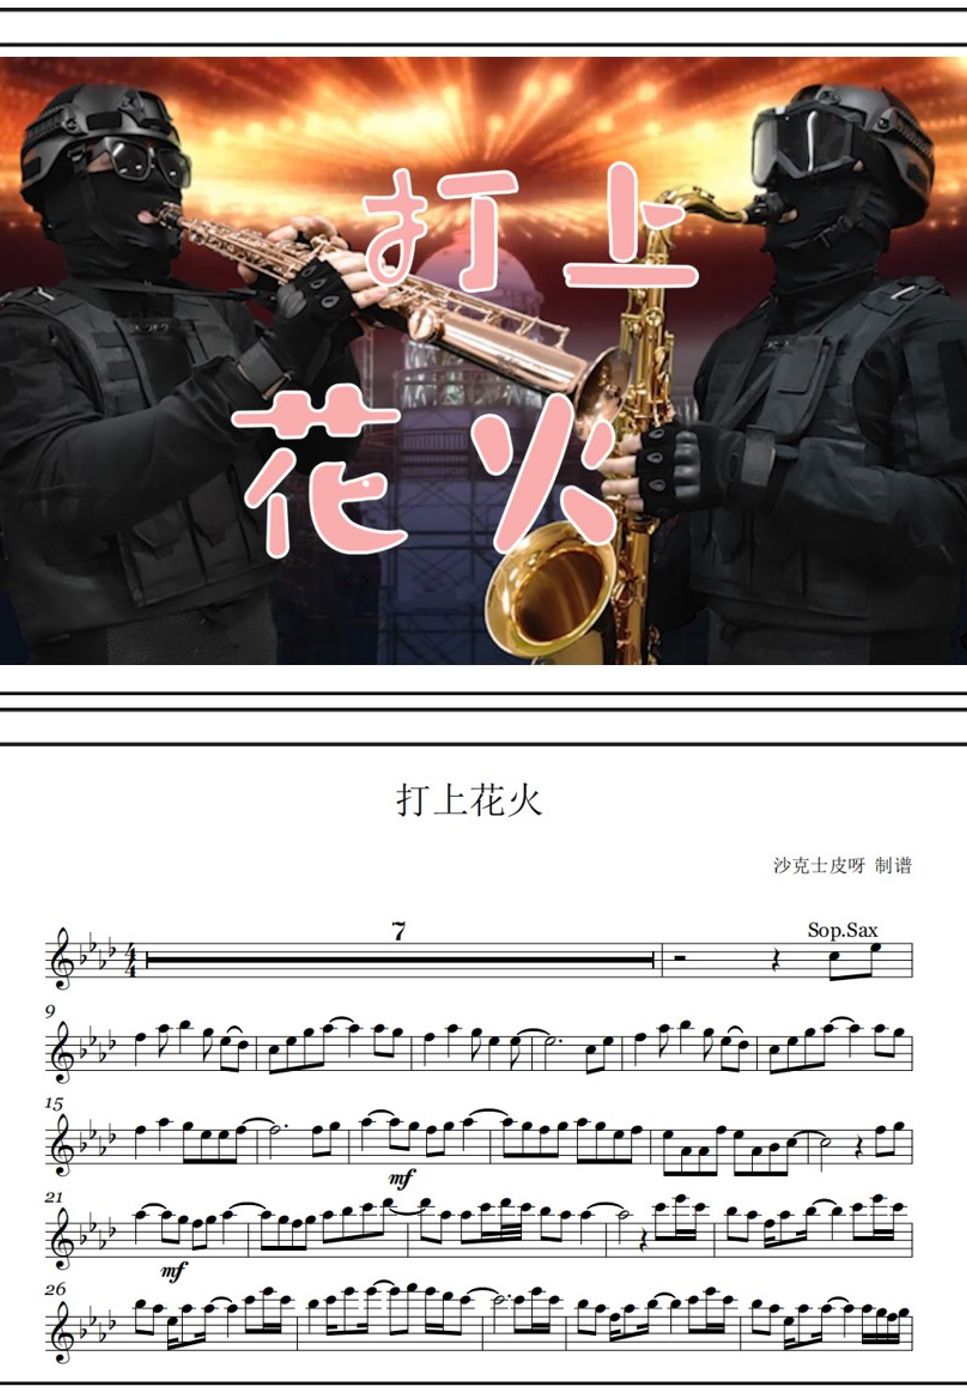 米津玄师 - 打ち上げ花火 (For Sop&Tenor Sax) by 沙克士皮呀